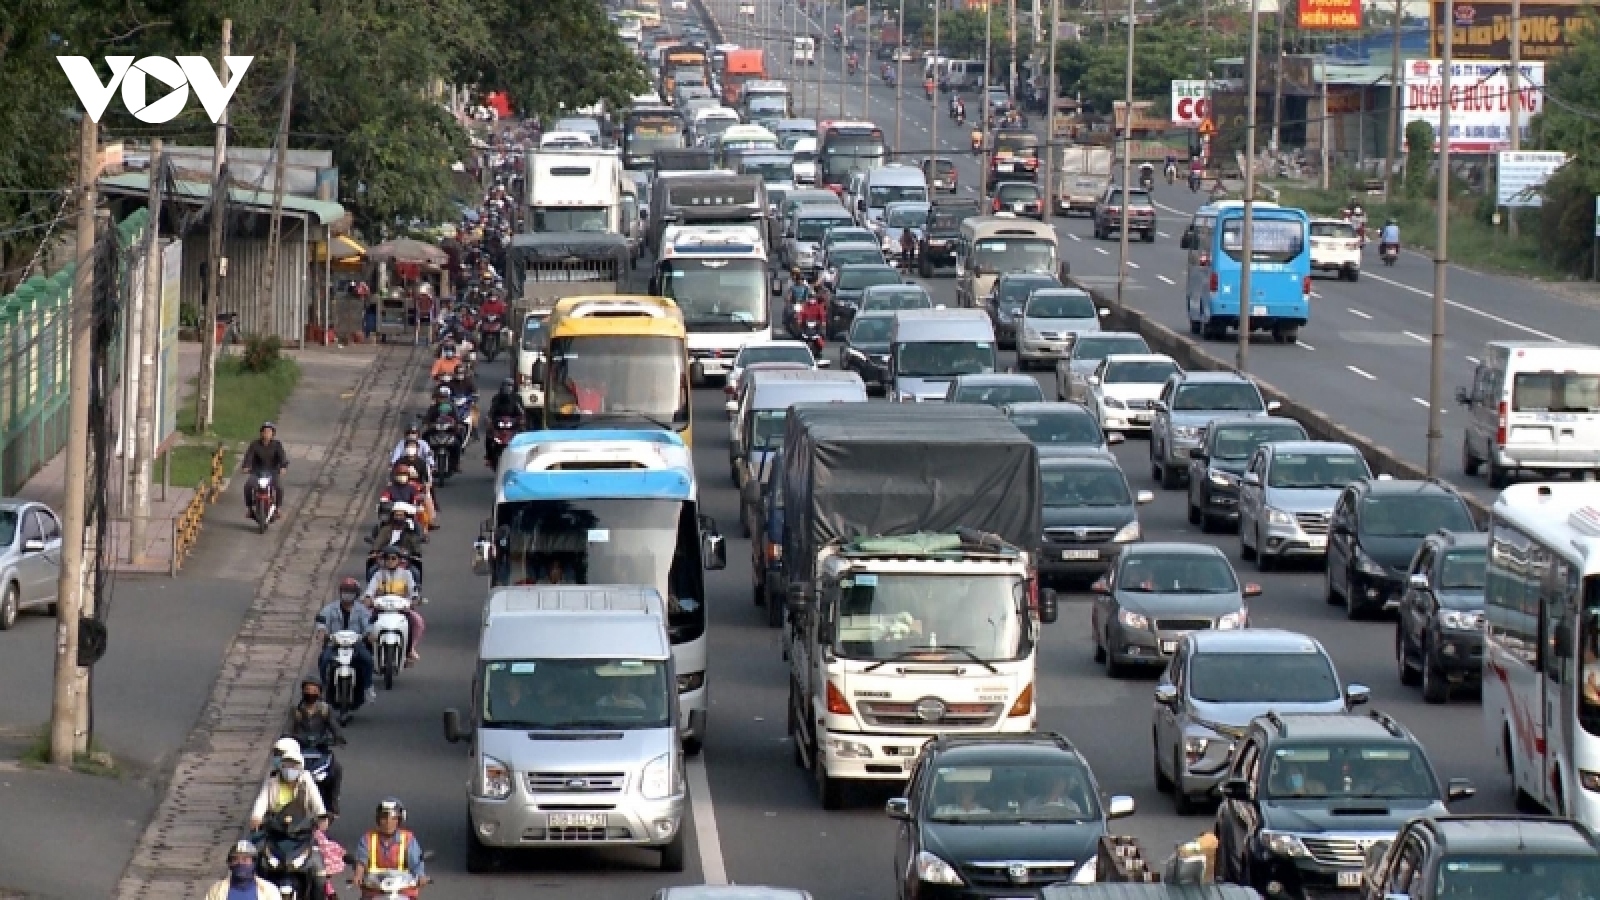 Quốc lộ trong thành phố: Giao về cho địa phương quản lý là cần thiết